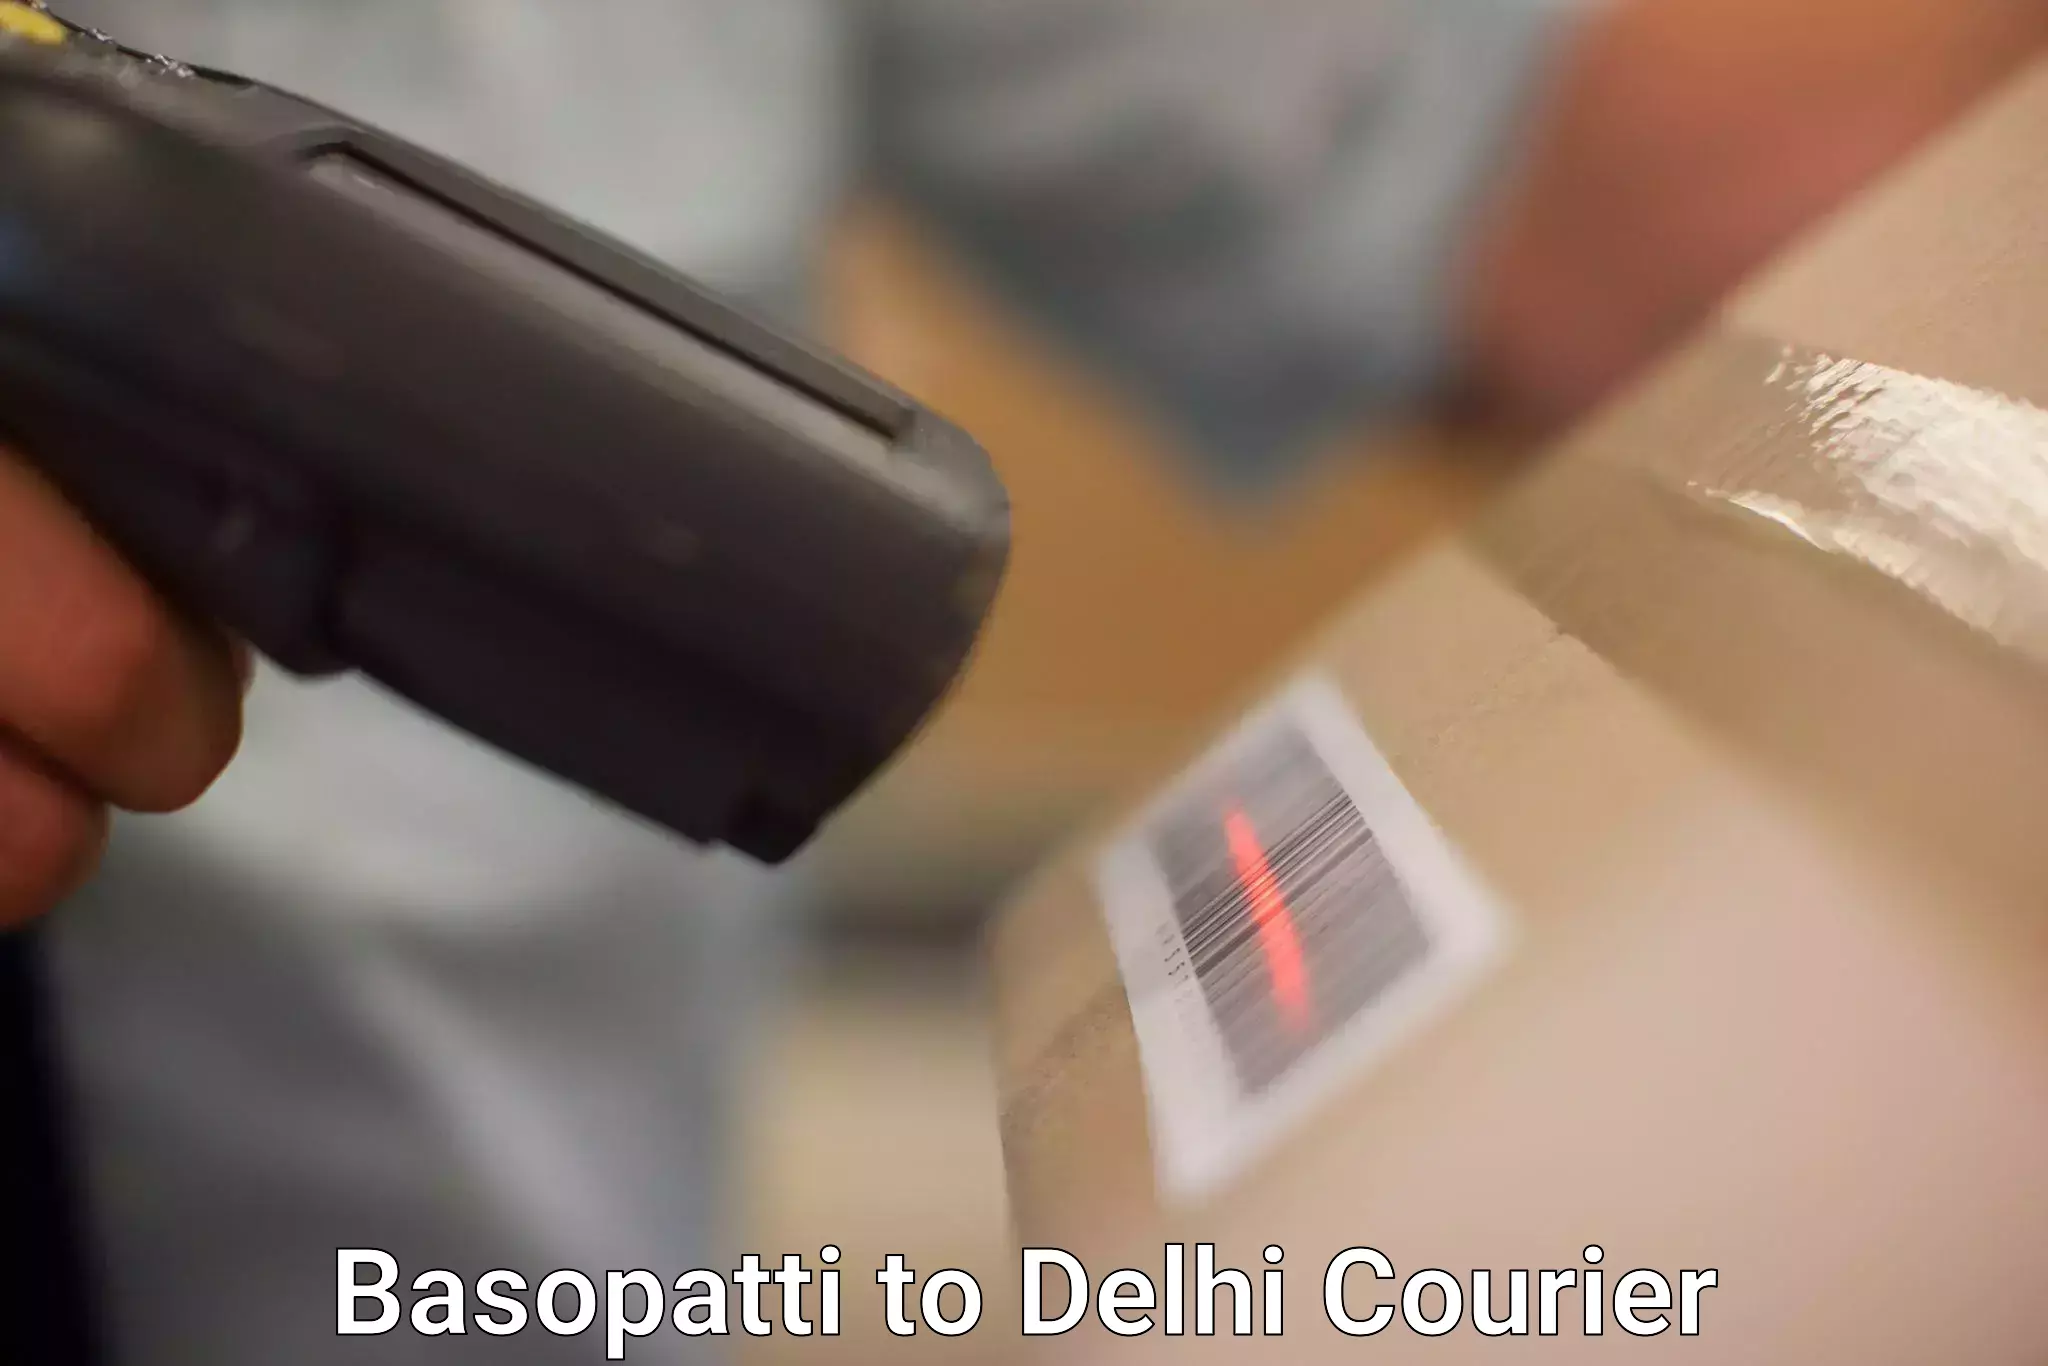 Urban courier service Basopatti to Lodhi Road